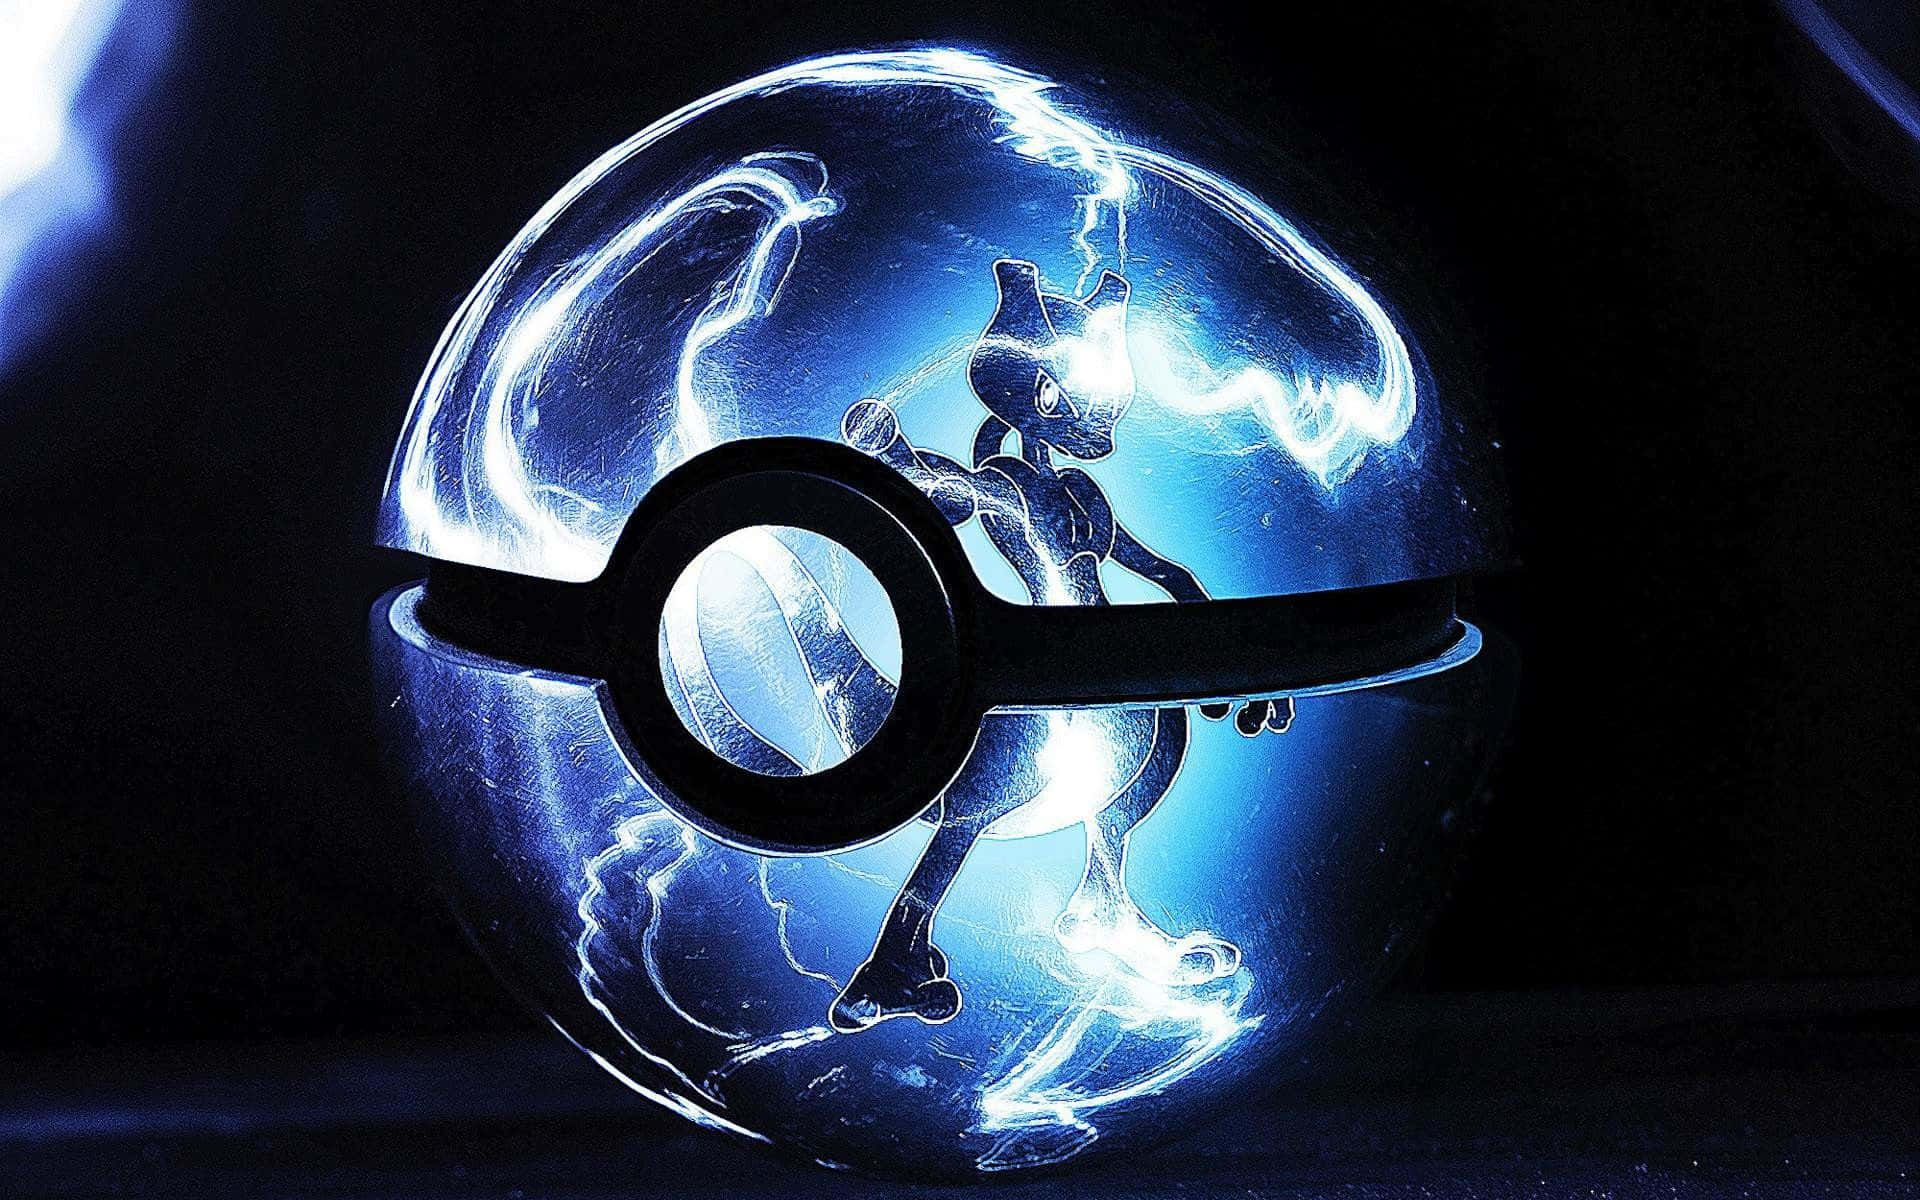 Mewtwonel Background Trasparente Di Un’immagine Di Pokémon Dentro Una Poké Ball Trasparente.